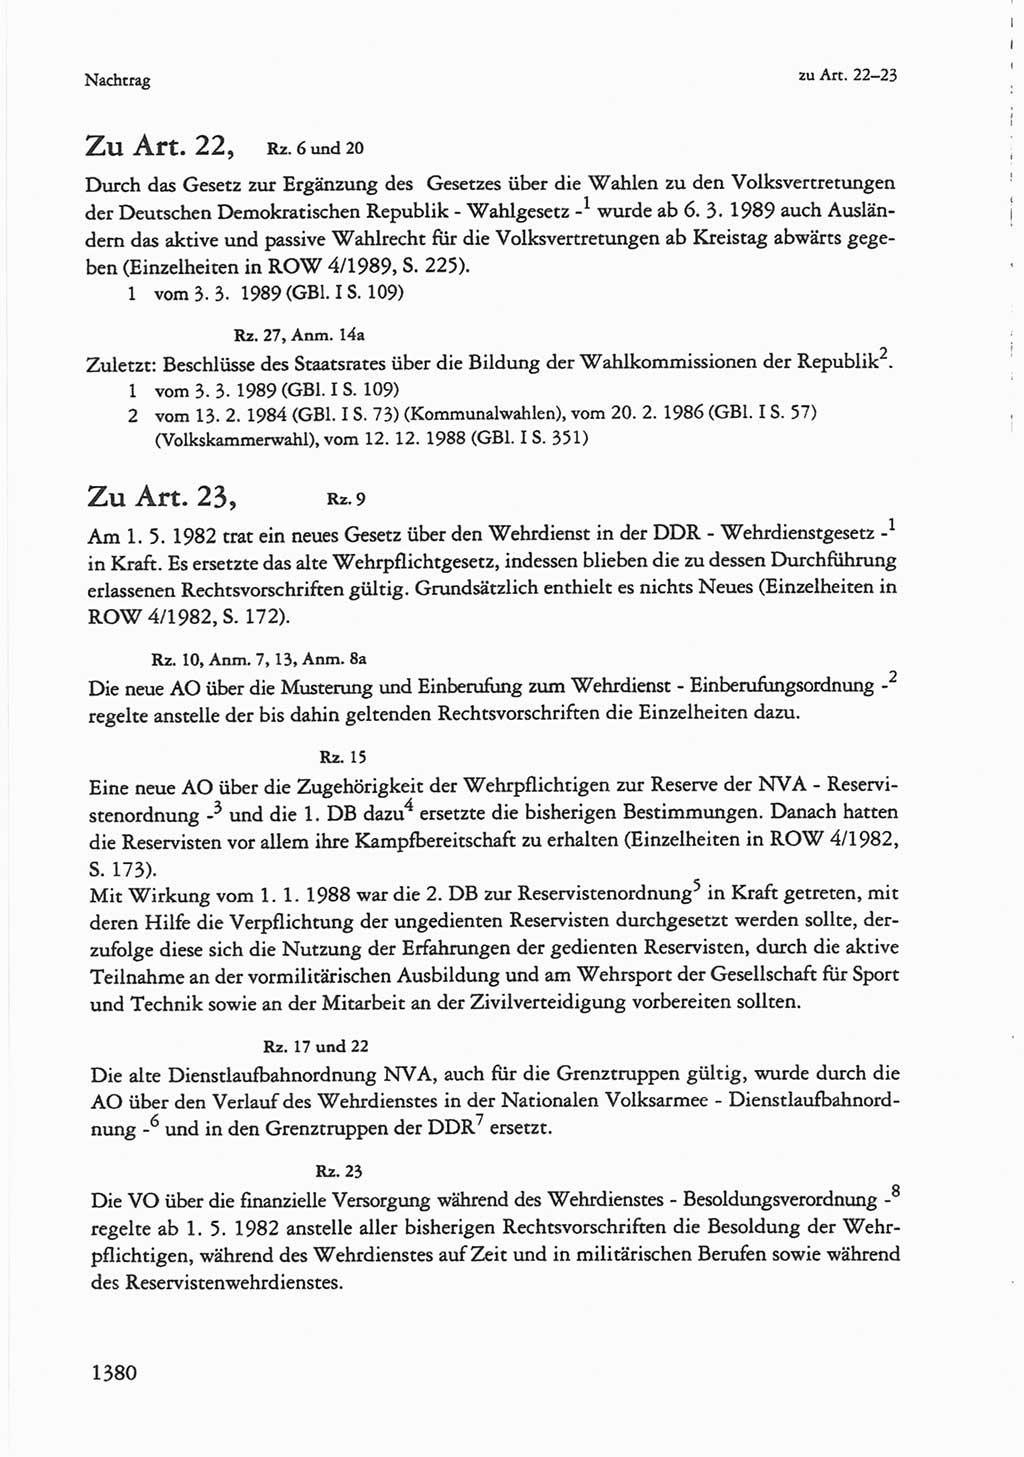 Die sozialistische Verfassung der Deutschen Demokratischen Republik (DDR), Kommentar mit einem Nachtrag 1997, Seite 1380 (Soz. Verf. DDR Komm. Nachtr. 1997, S. 1380)